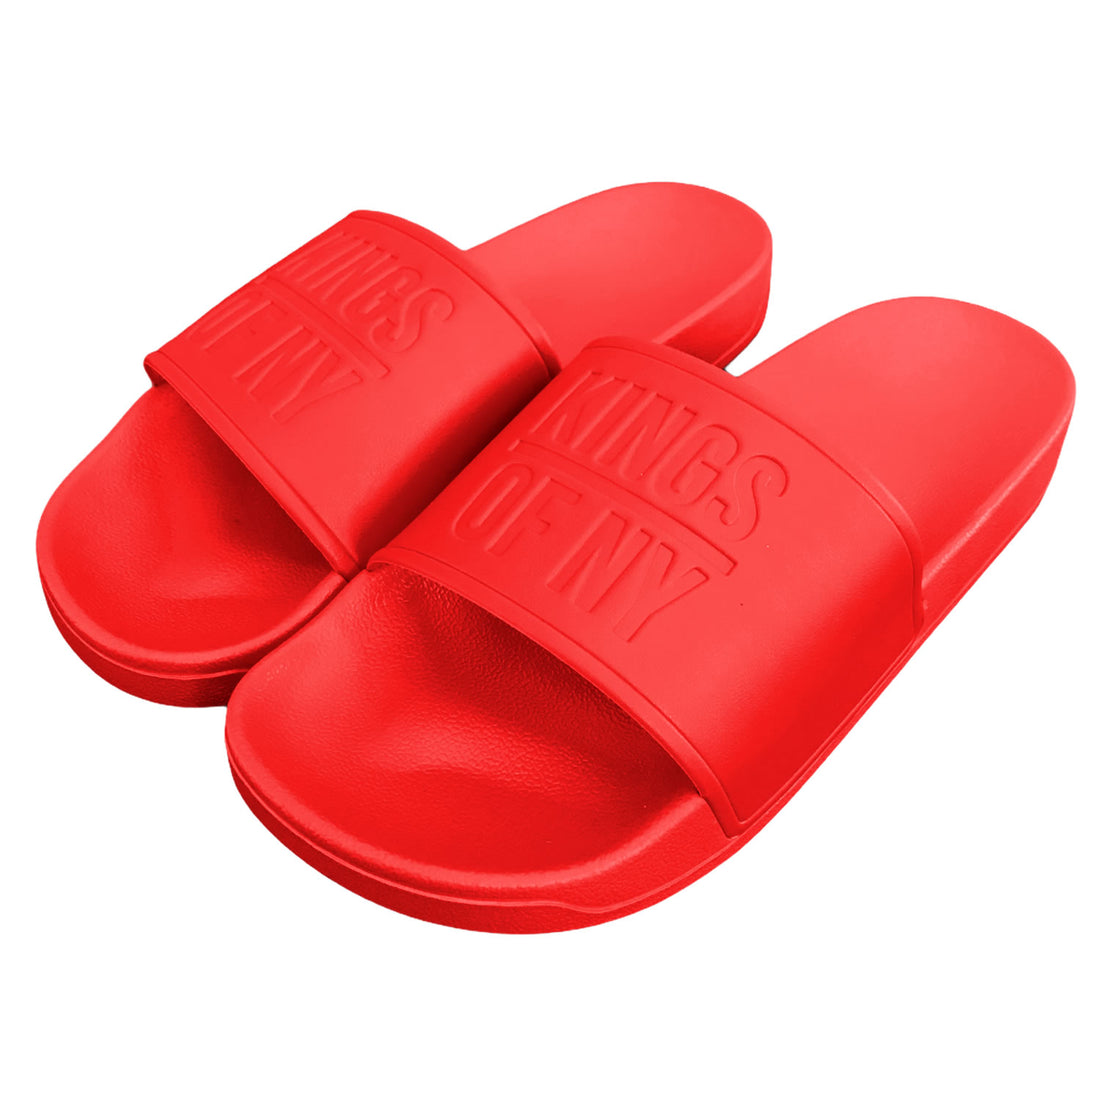 Red Kings Of NY Logo Mens Slide Sandals